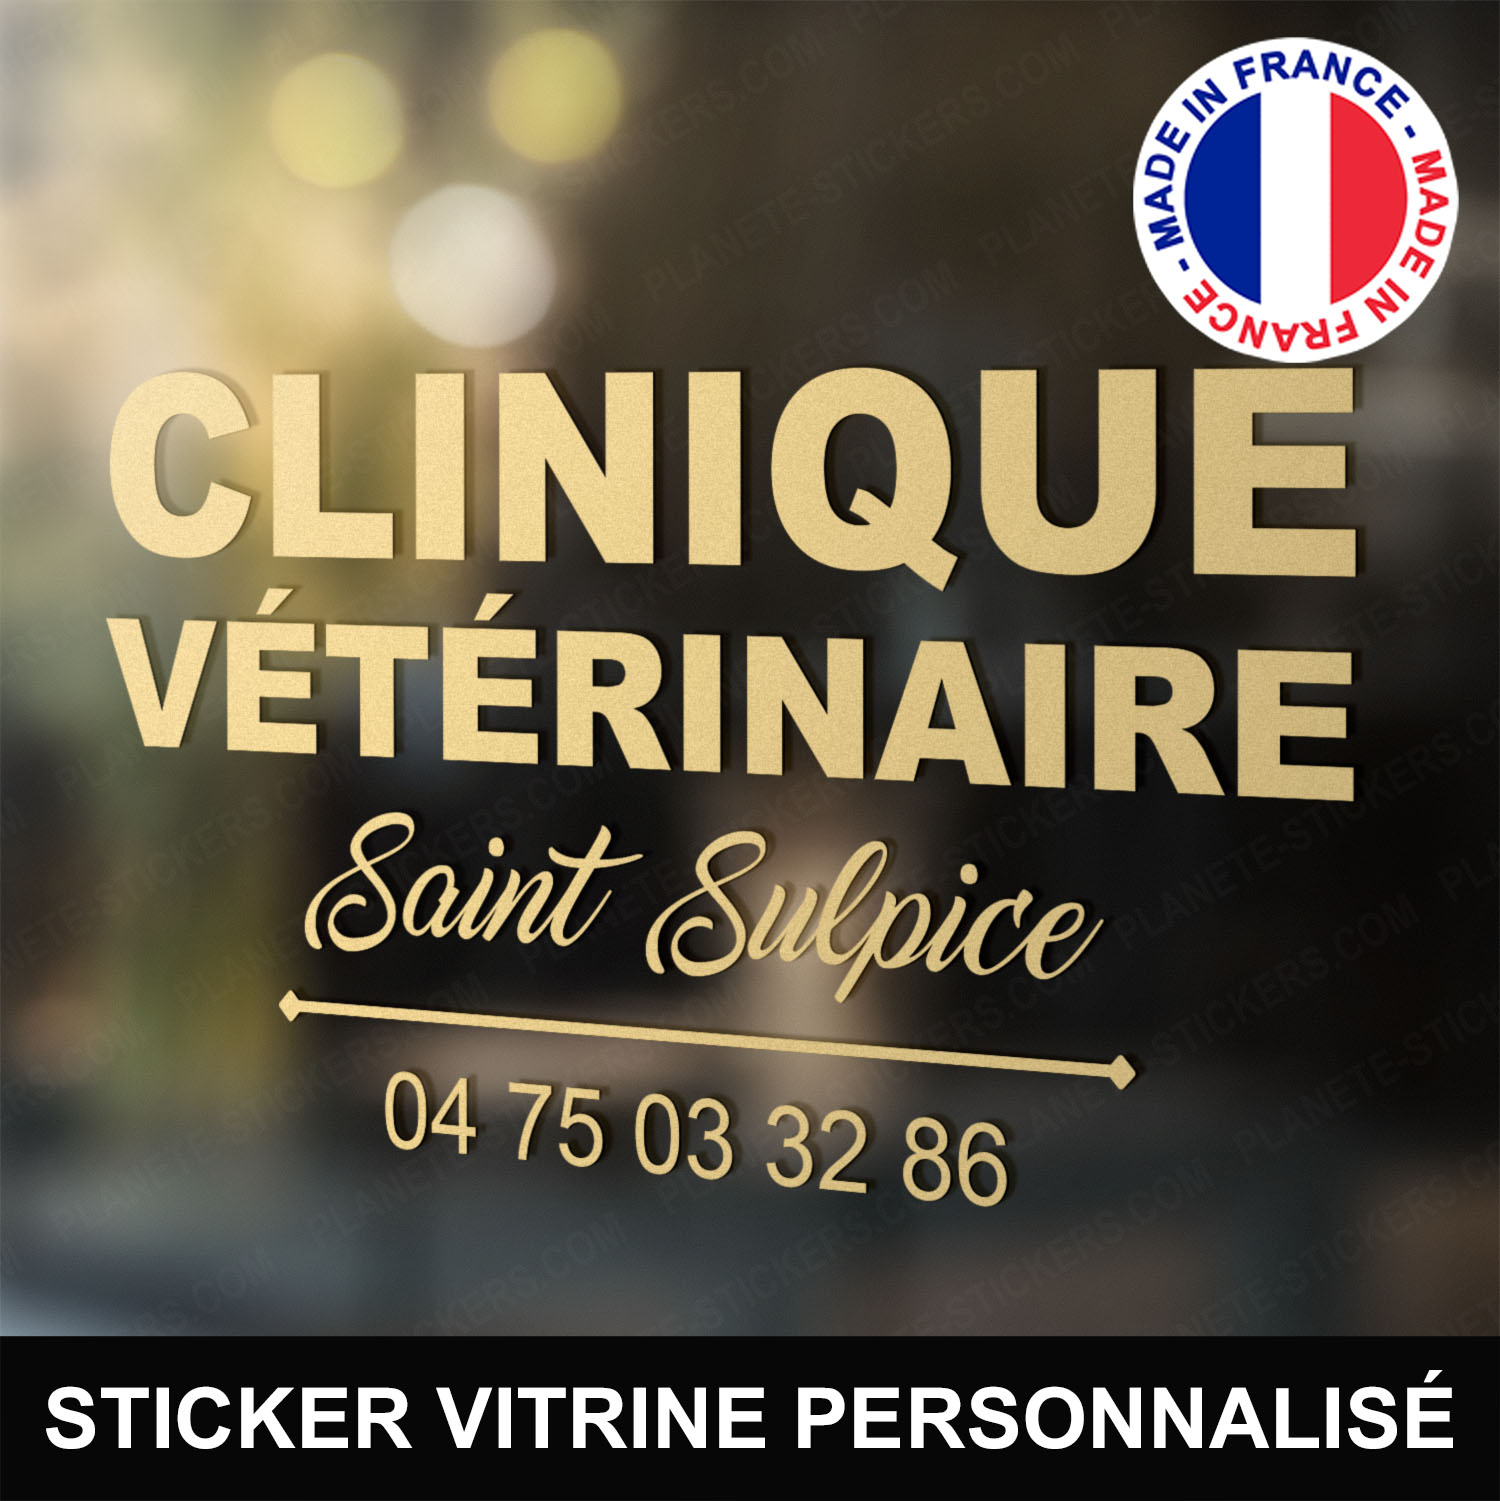 ref5veterinairevitrine-stickers-clinique-vétérinaire-vitrine-sticker-personnalisé-autocollant-pro-veterinaire-professionnel